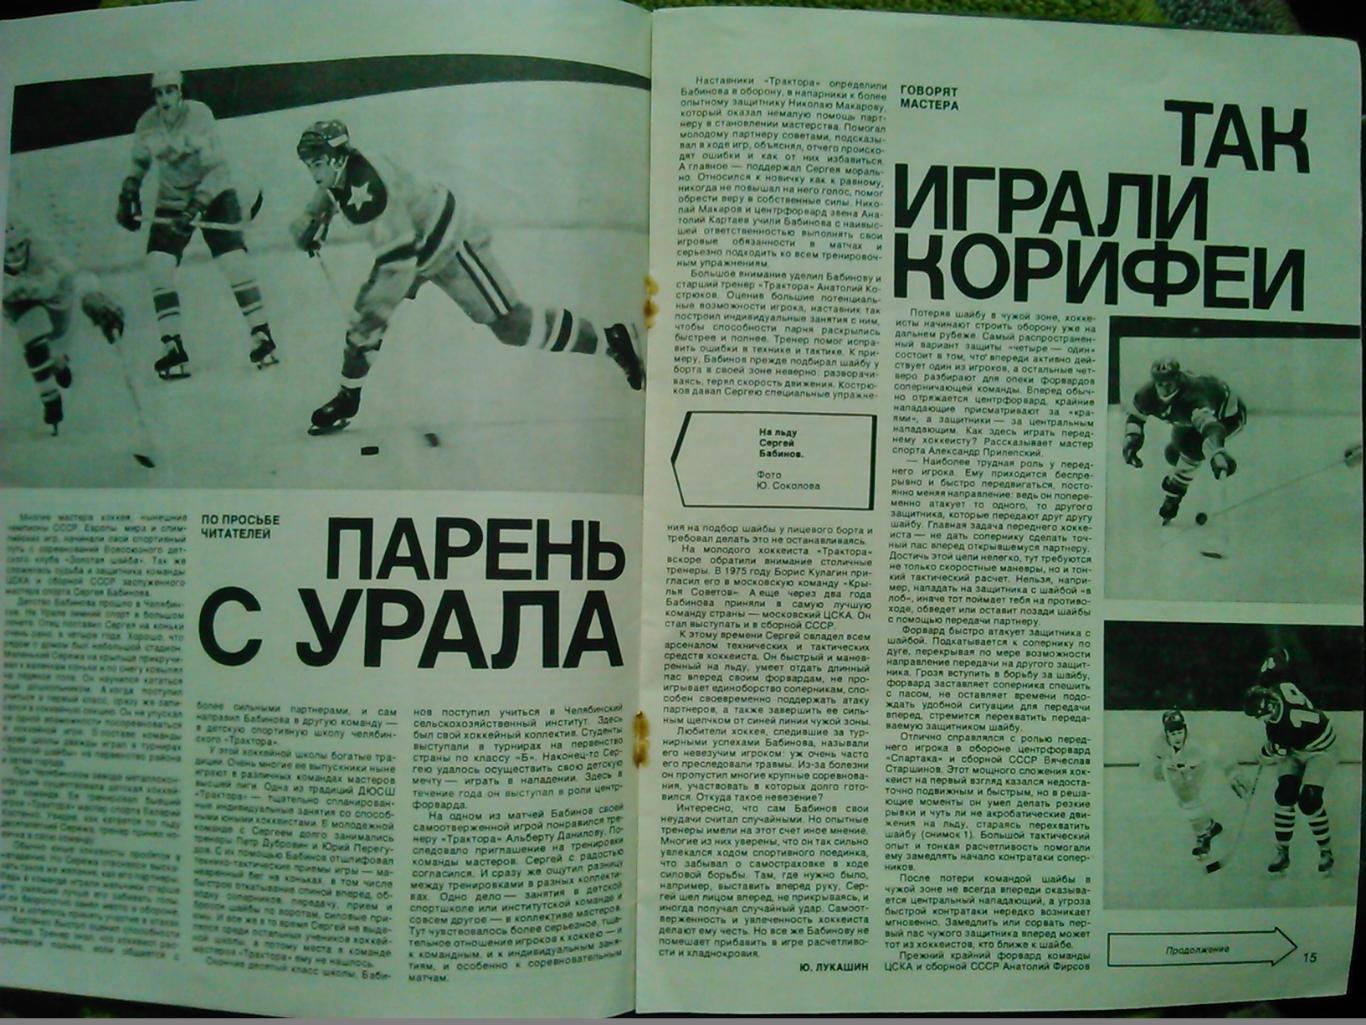 Спортивные игры №12.1981. Хоккей. Футбол. Оптом скидки до 50%! 1